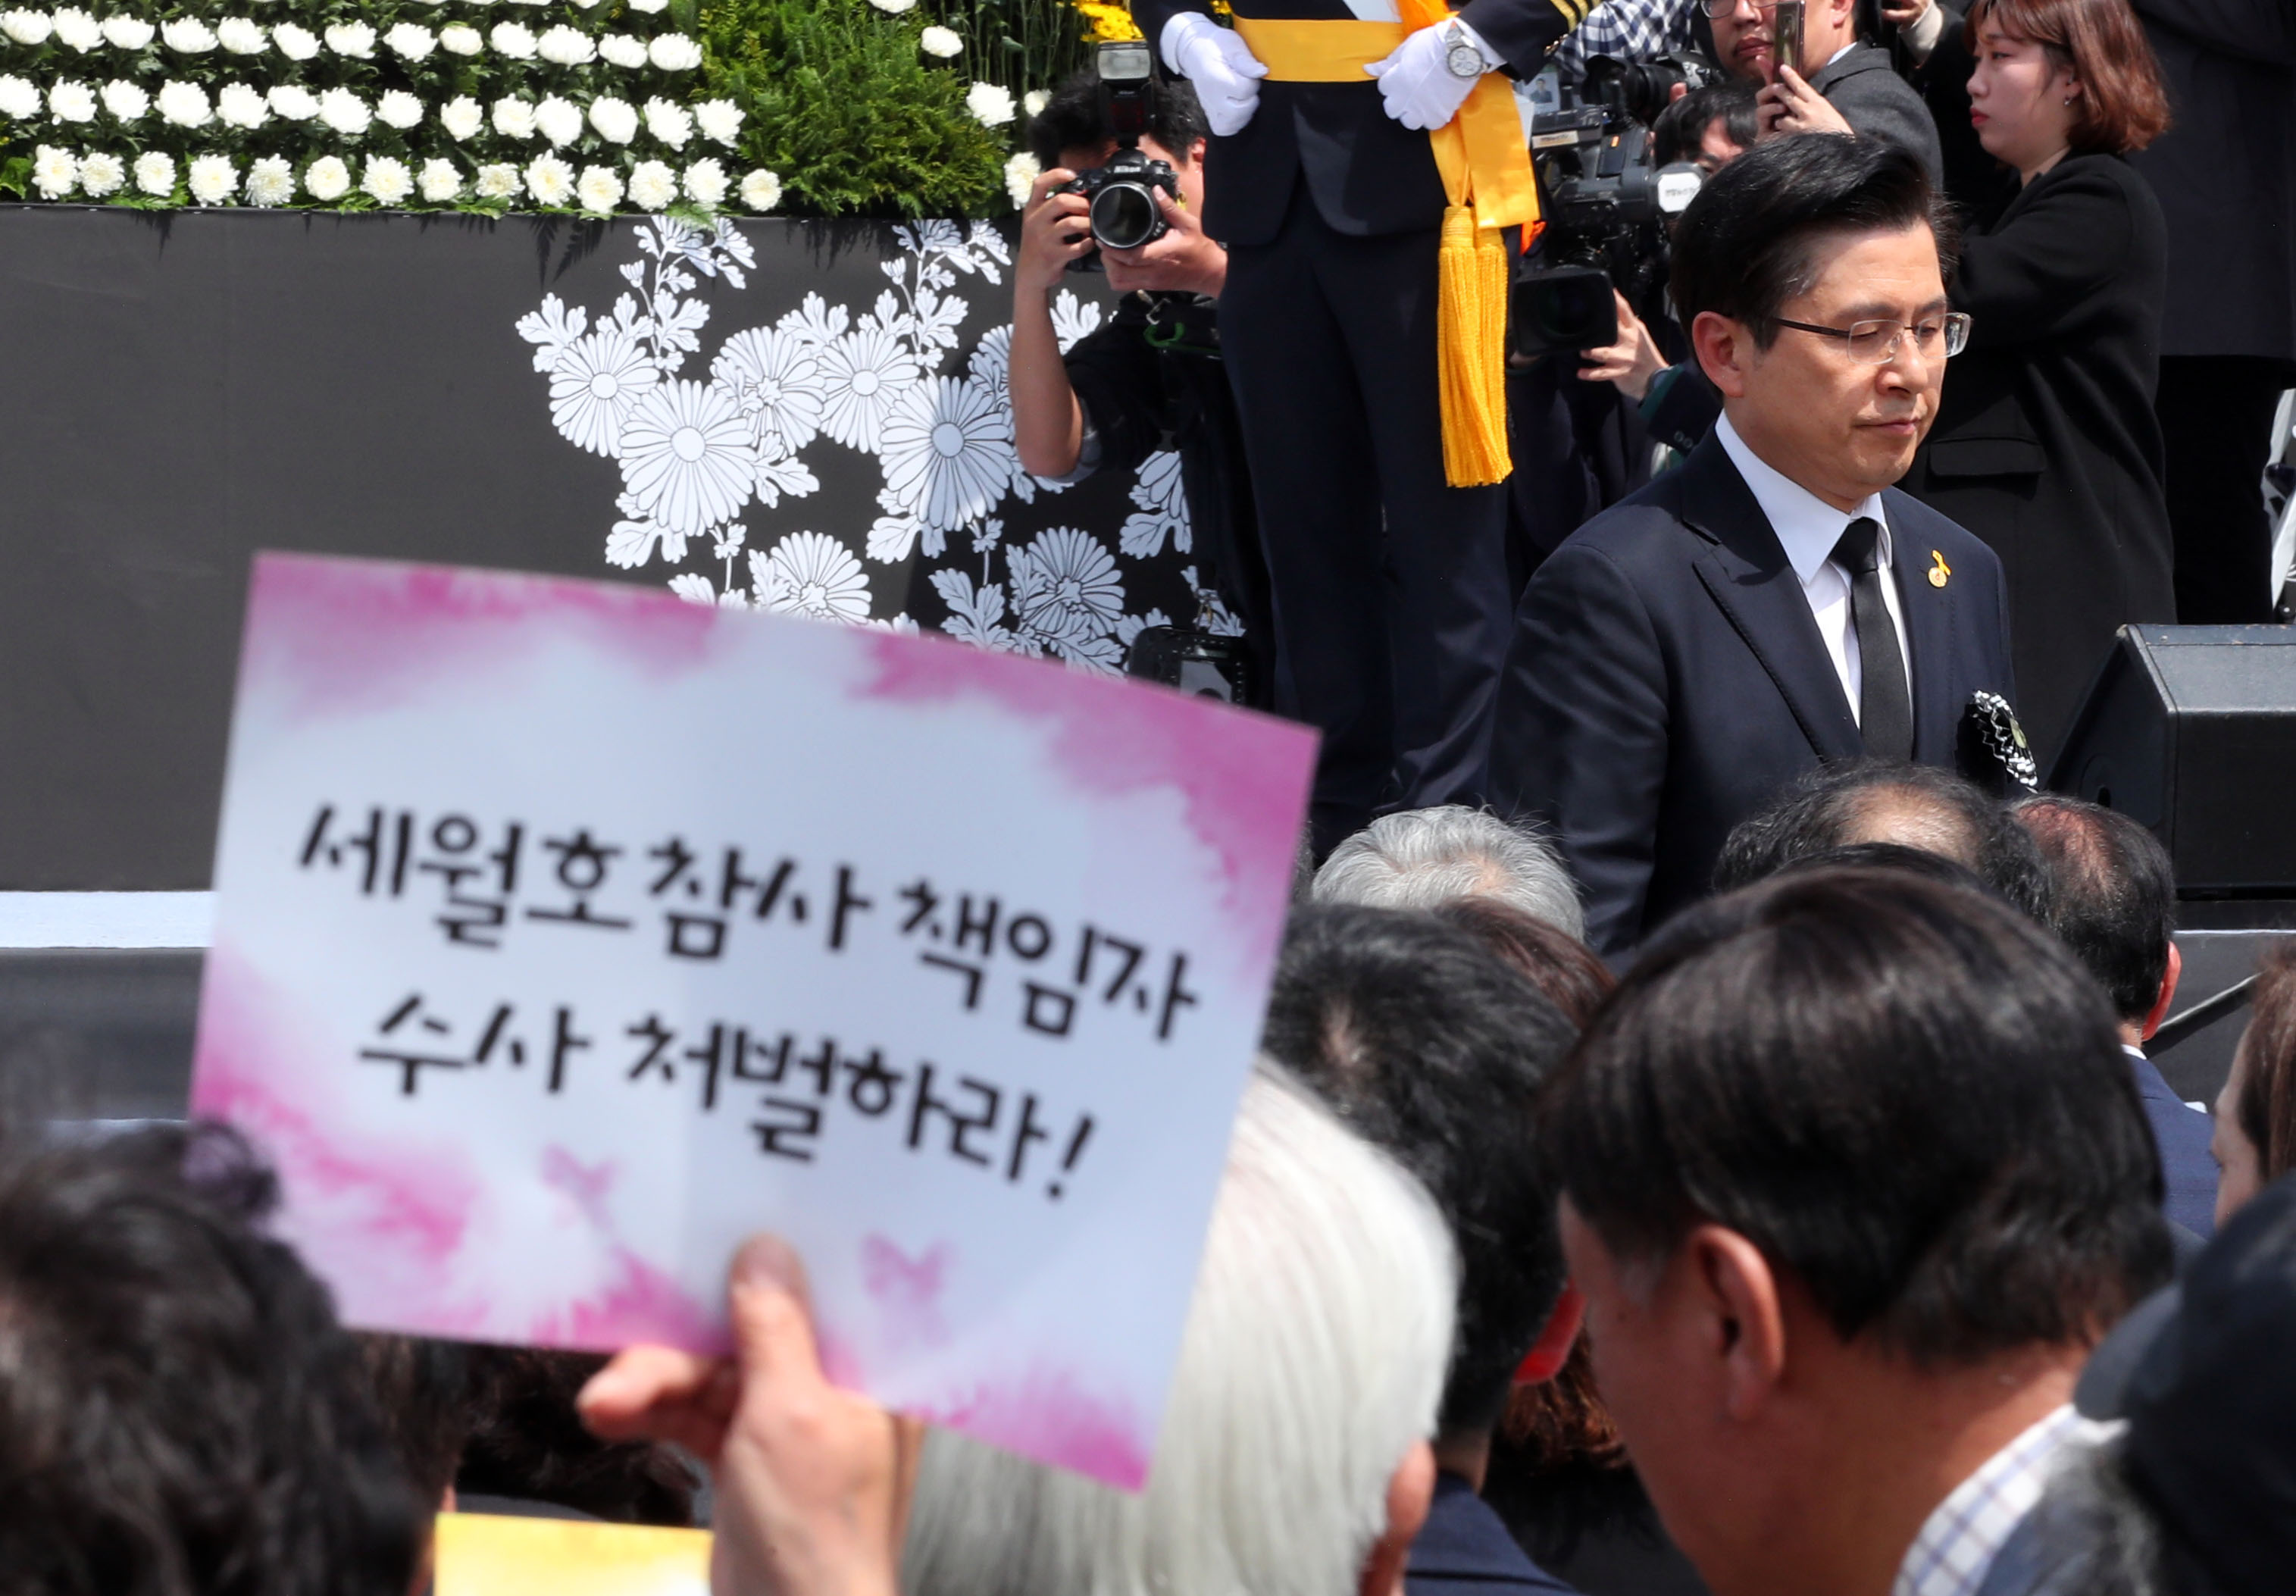 2019년 4월 16일 오전 인천 부평구 인천가족공원에서 열린 '세월호 참사 일반인 희생자 5주기 추모식'에서 황교안 자유한국당 당시 대표가 시민단체 항의를 받고 있다.